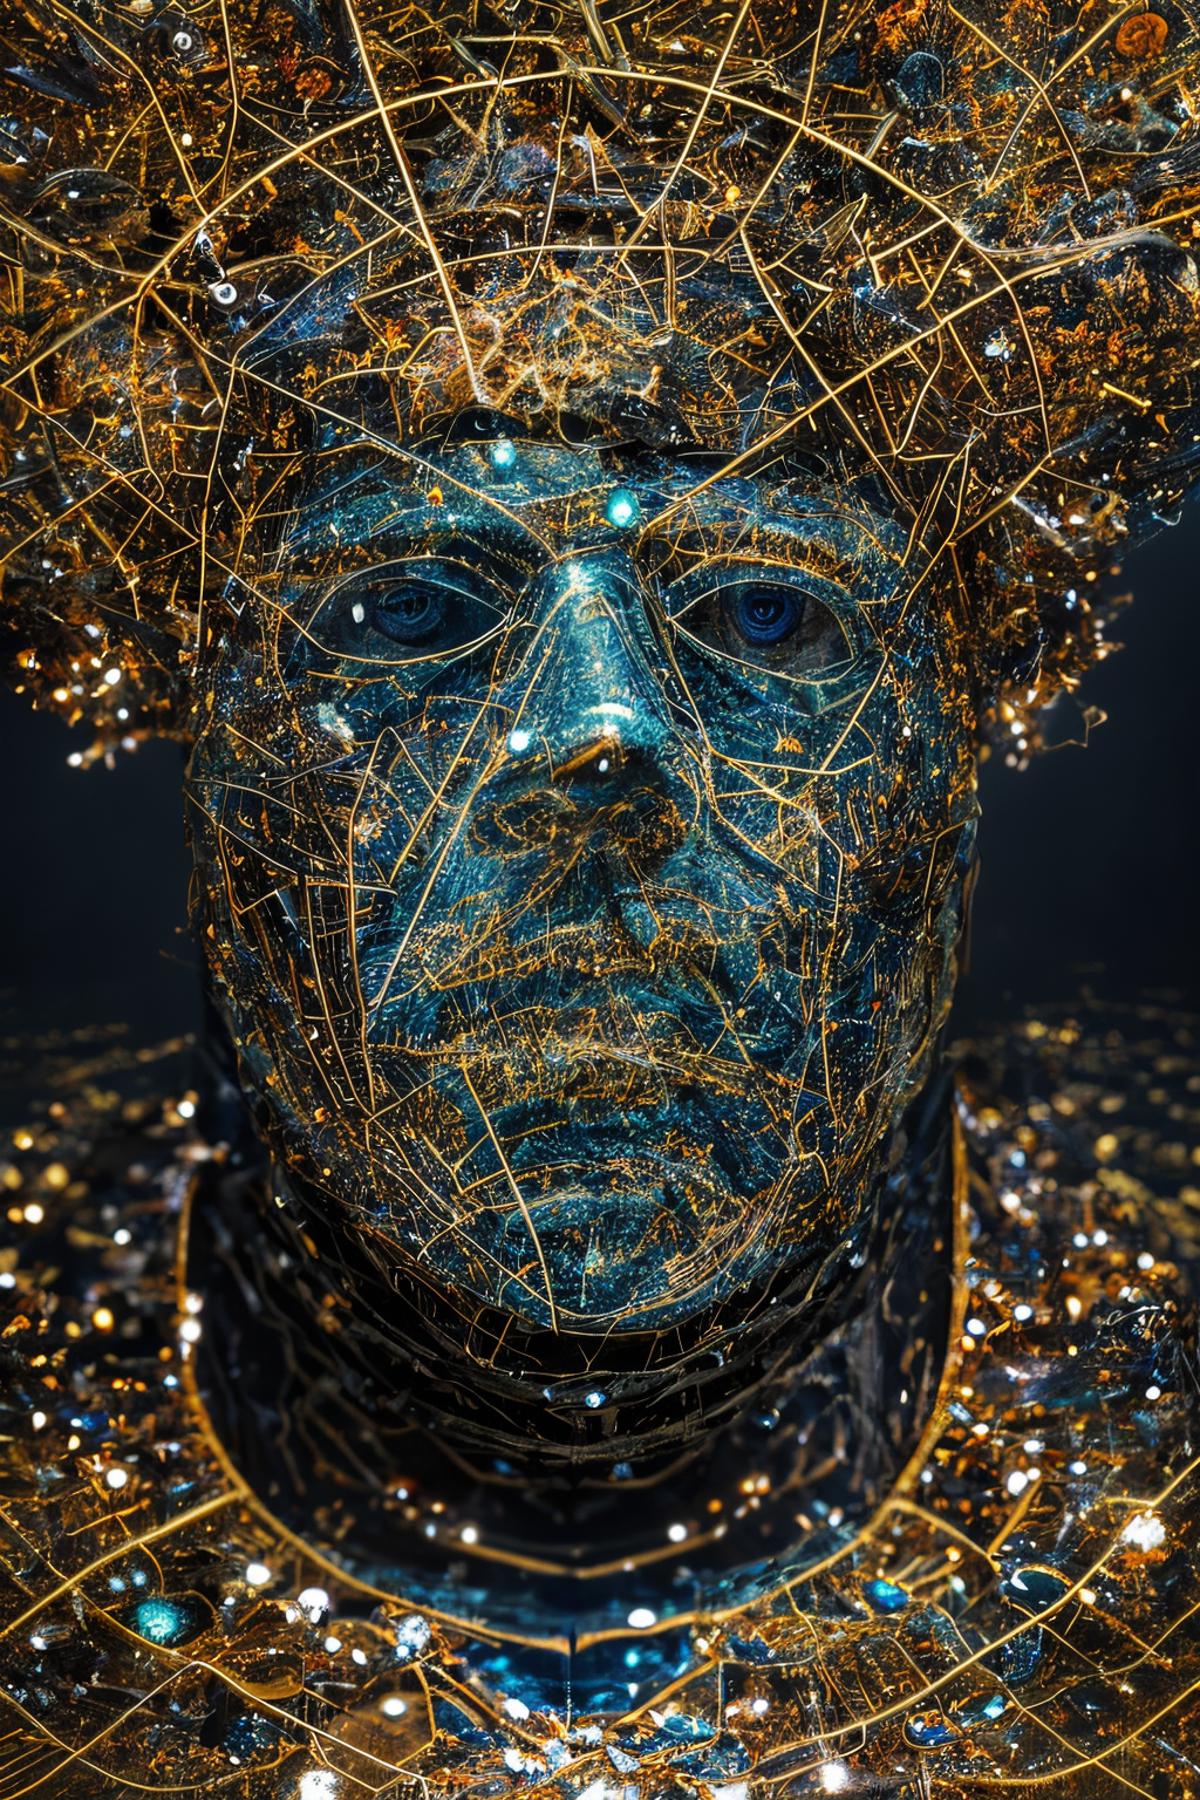 AI model image by sandarache